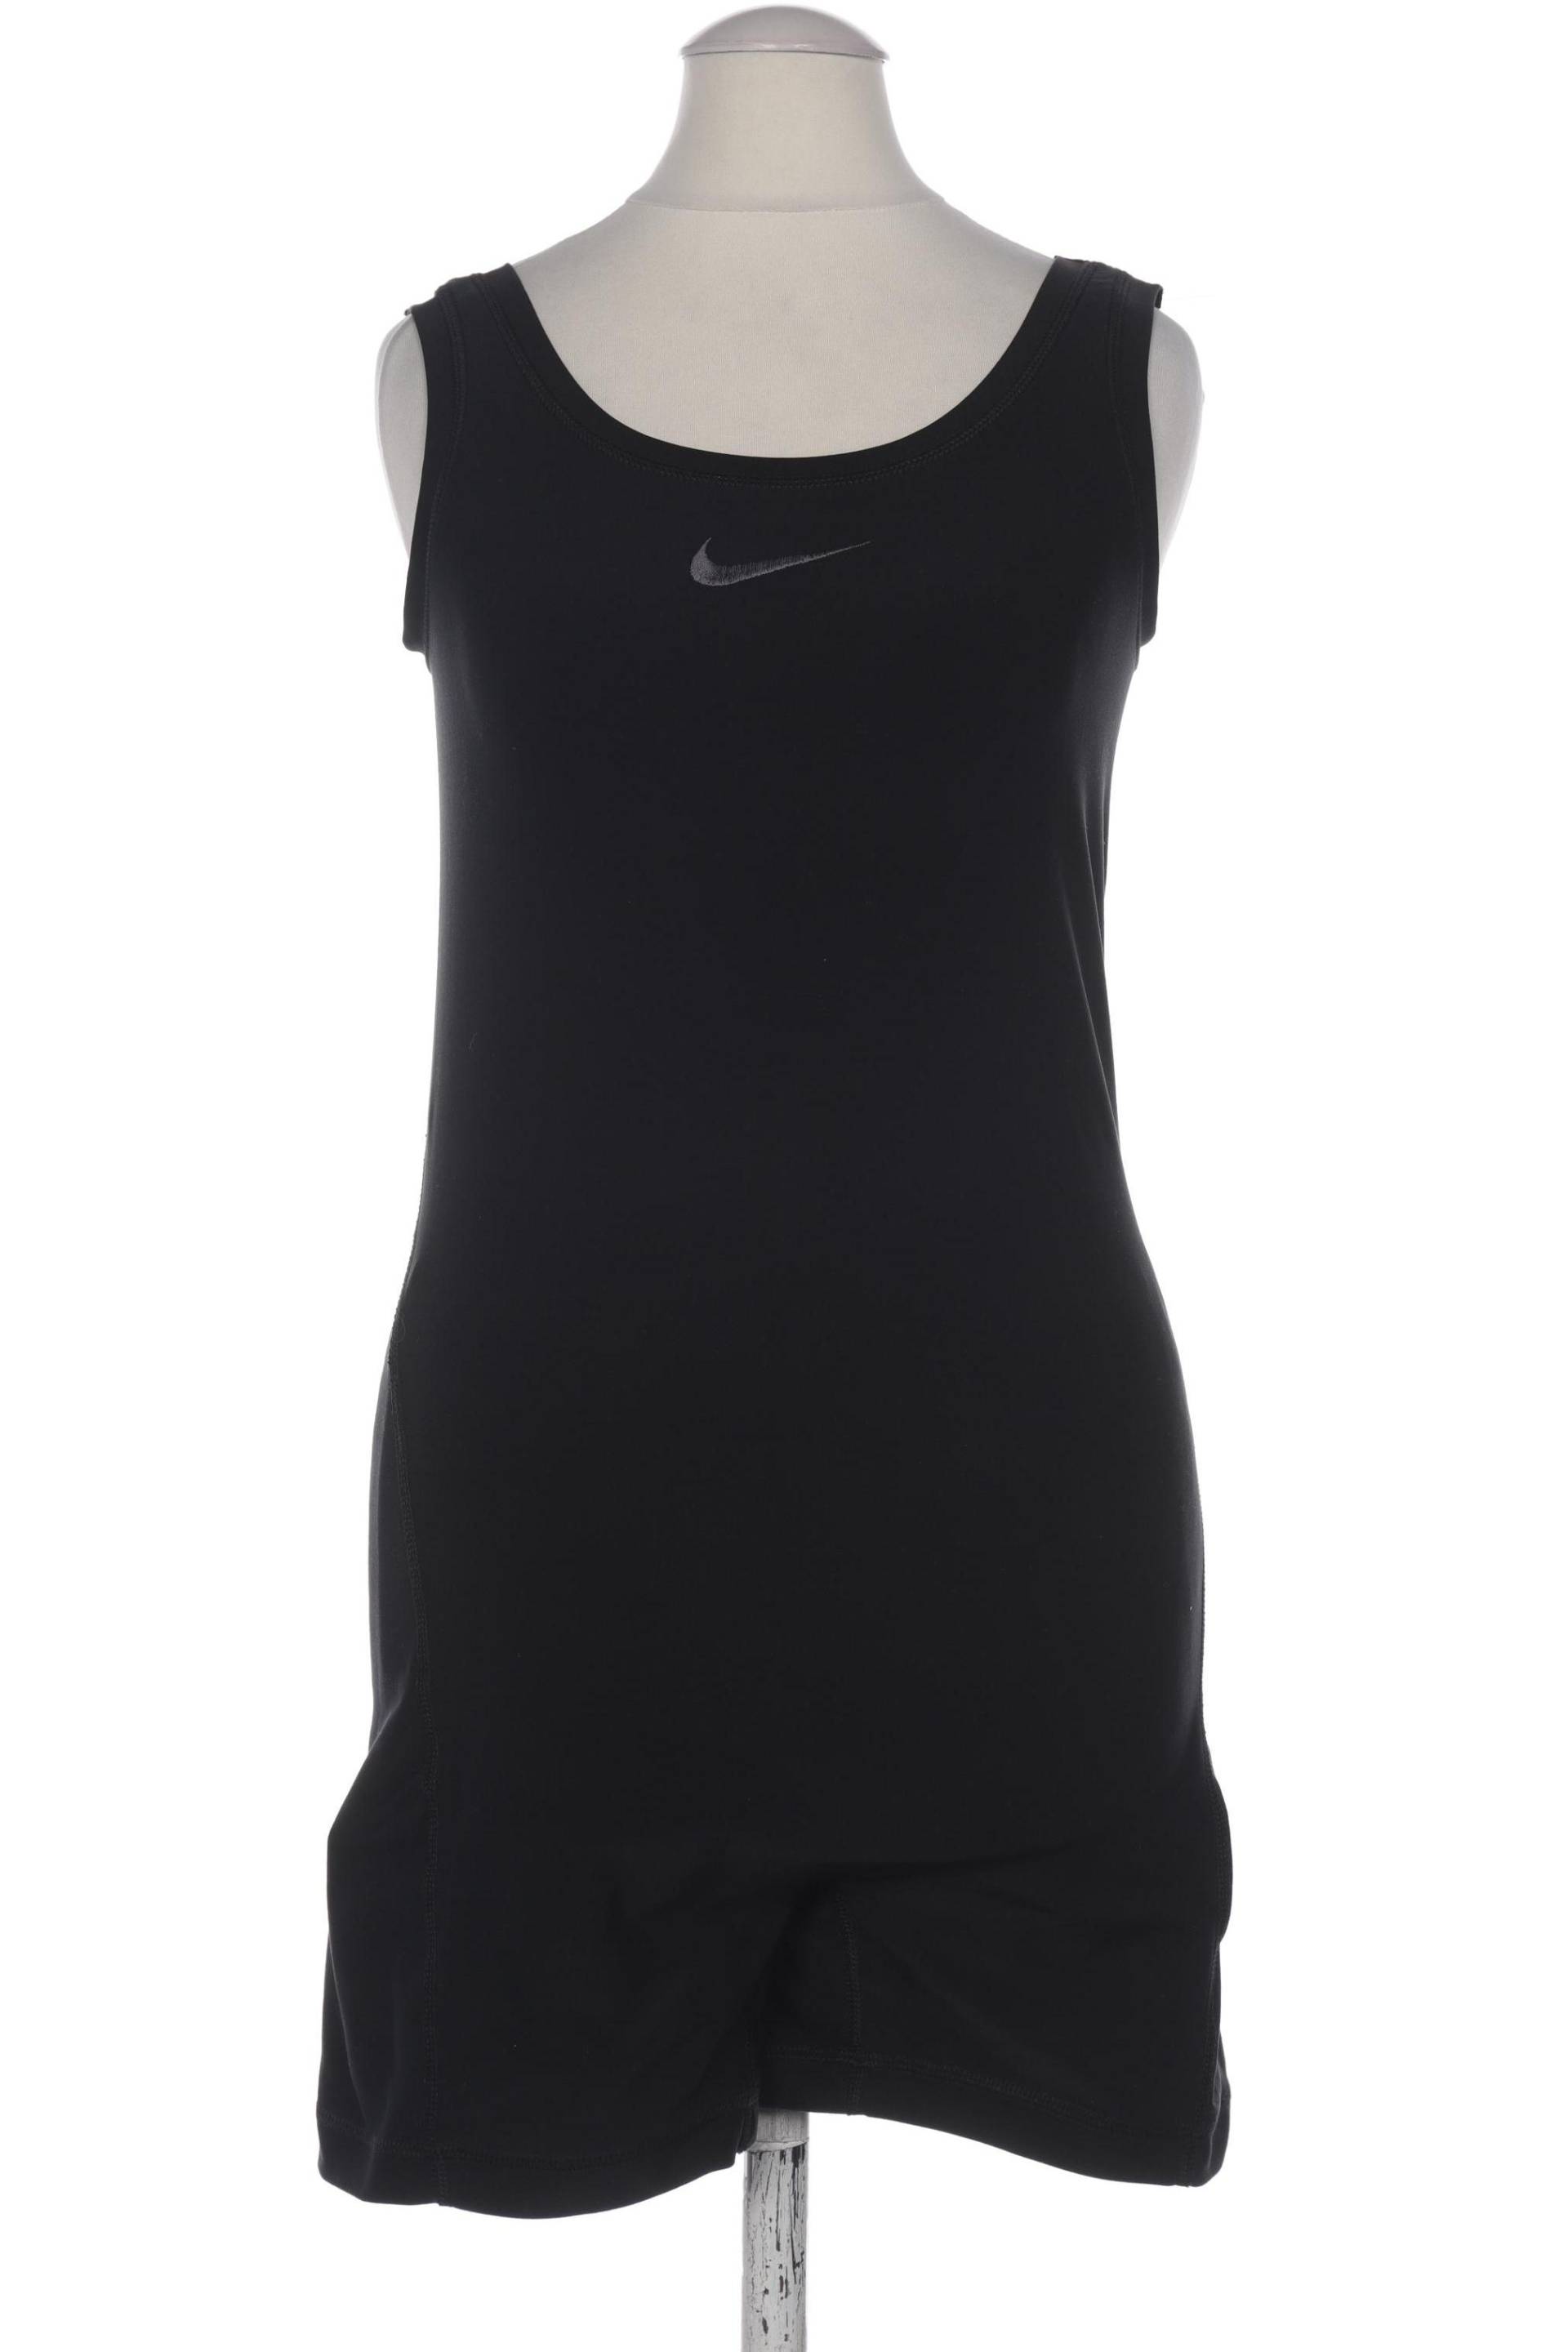 Nike Damen Jumpsuit/Overall, schwarz, Gr. 42 von Nike